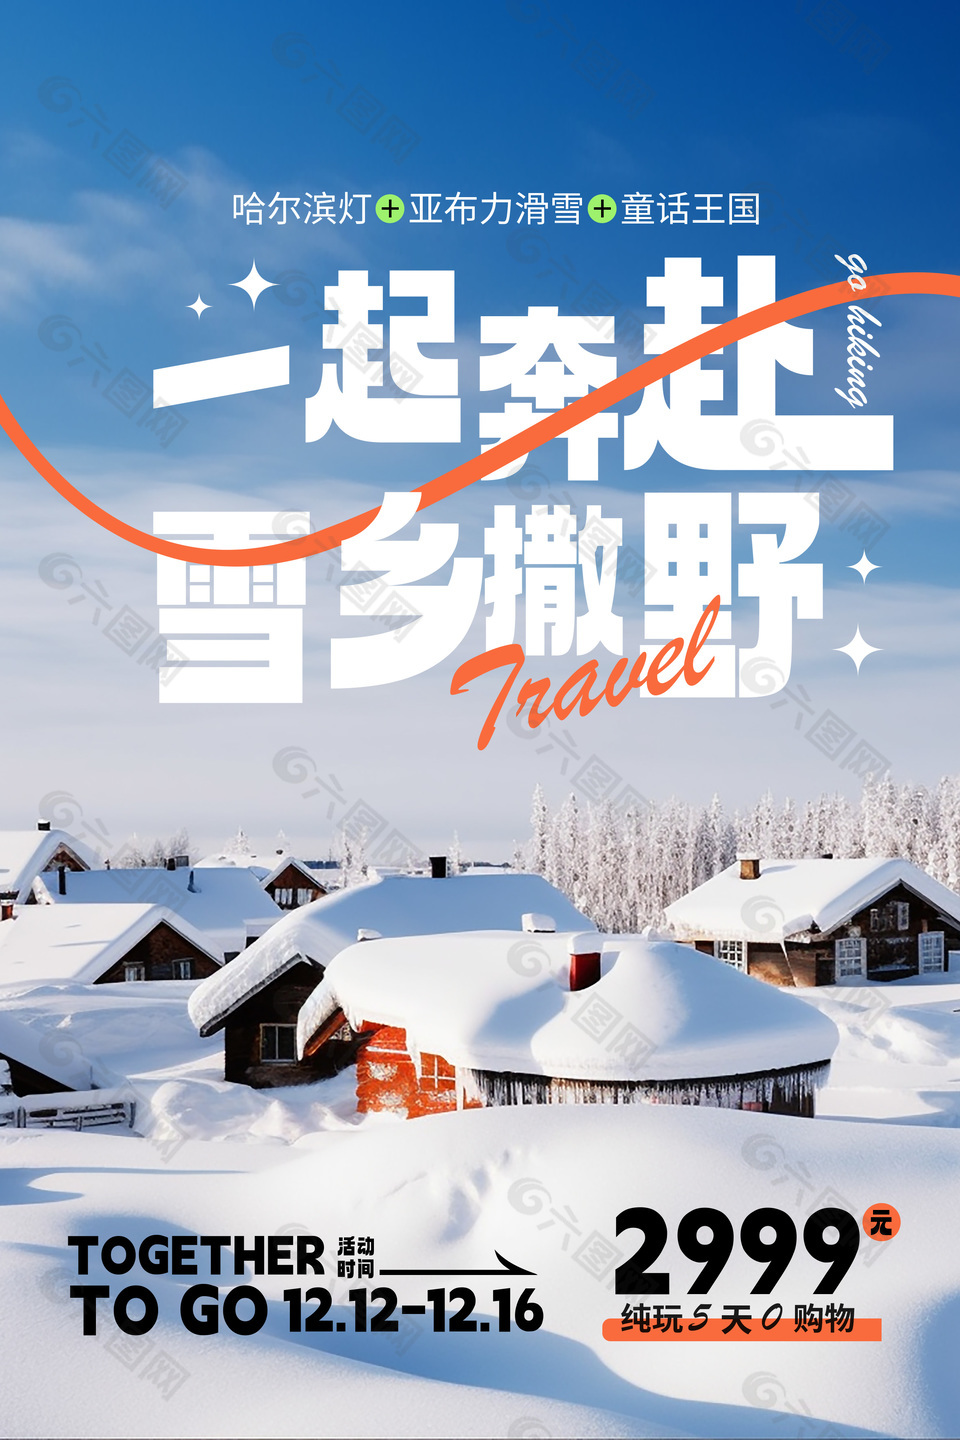 冬季雪乡旅游旅行社简约营销海报